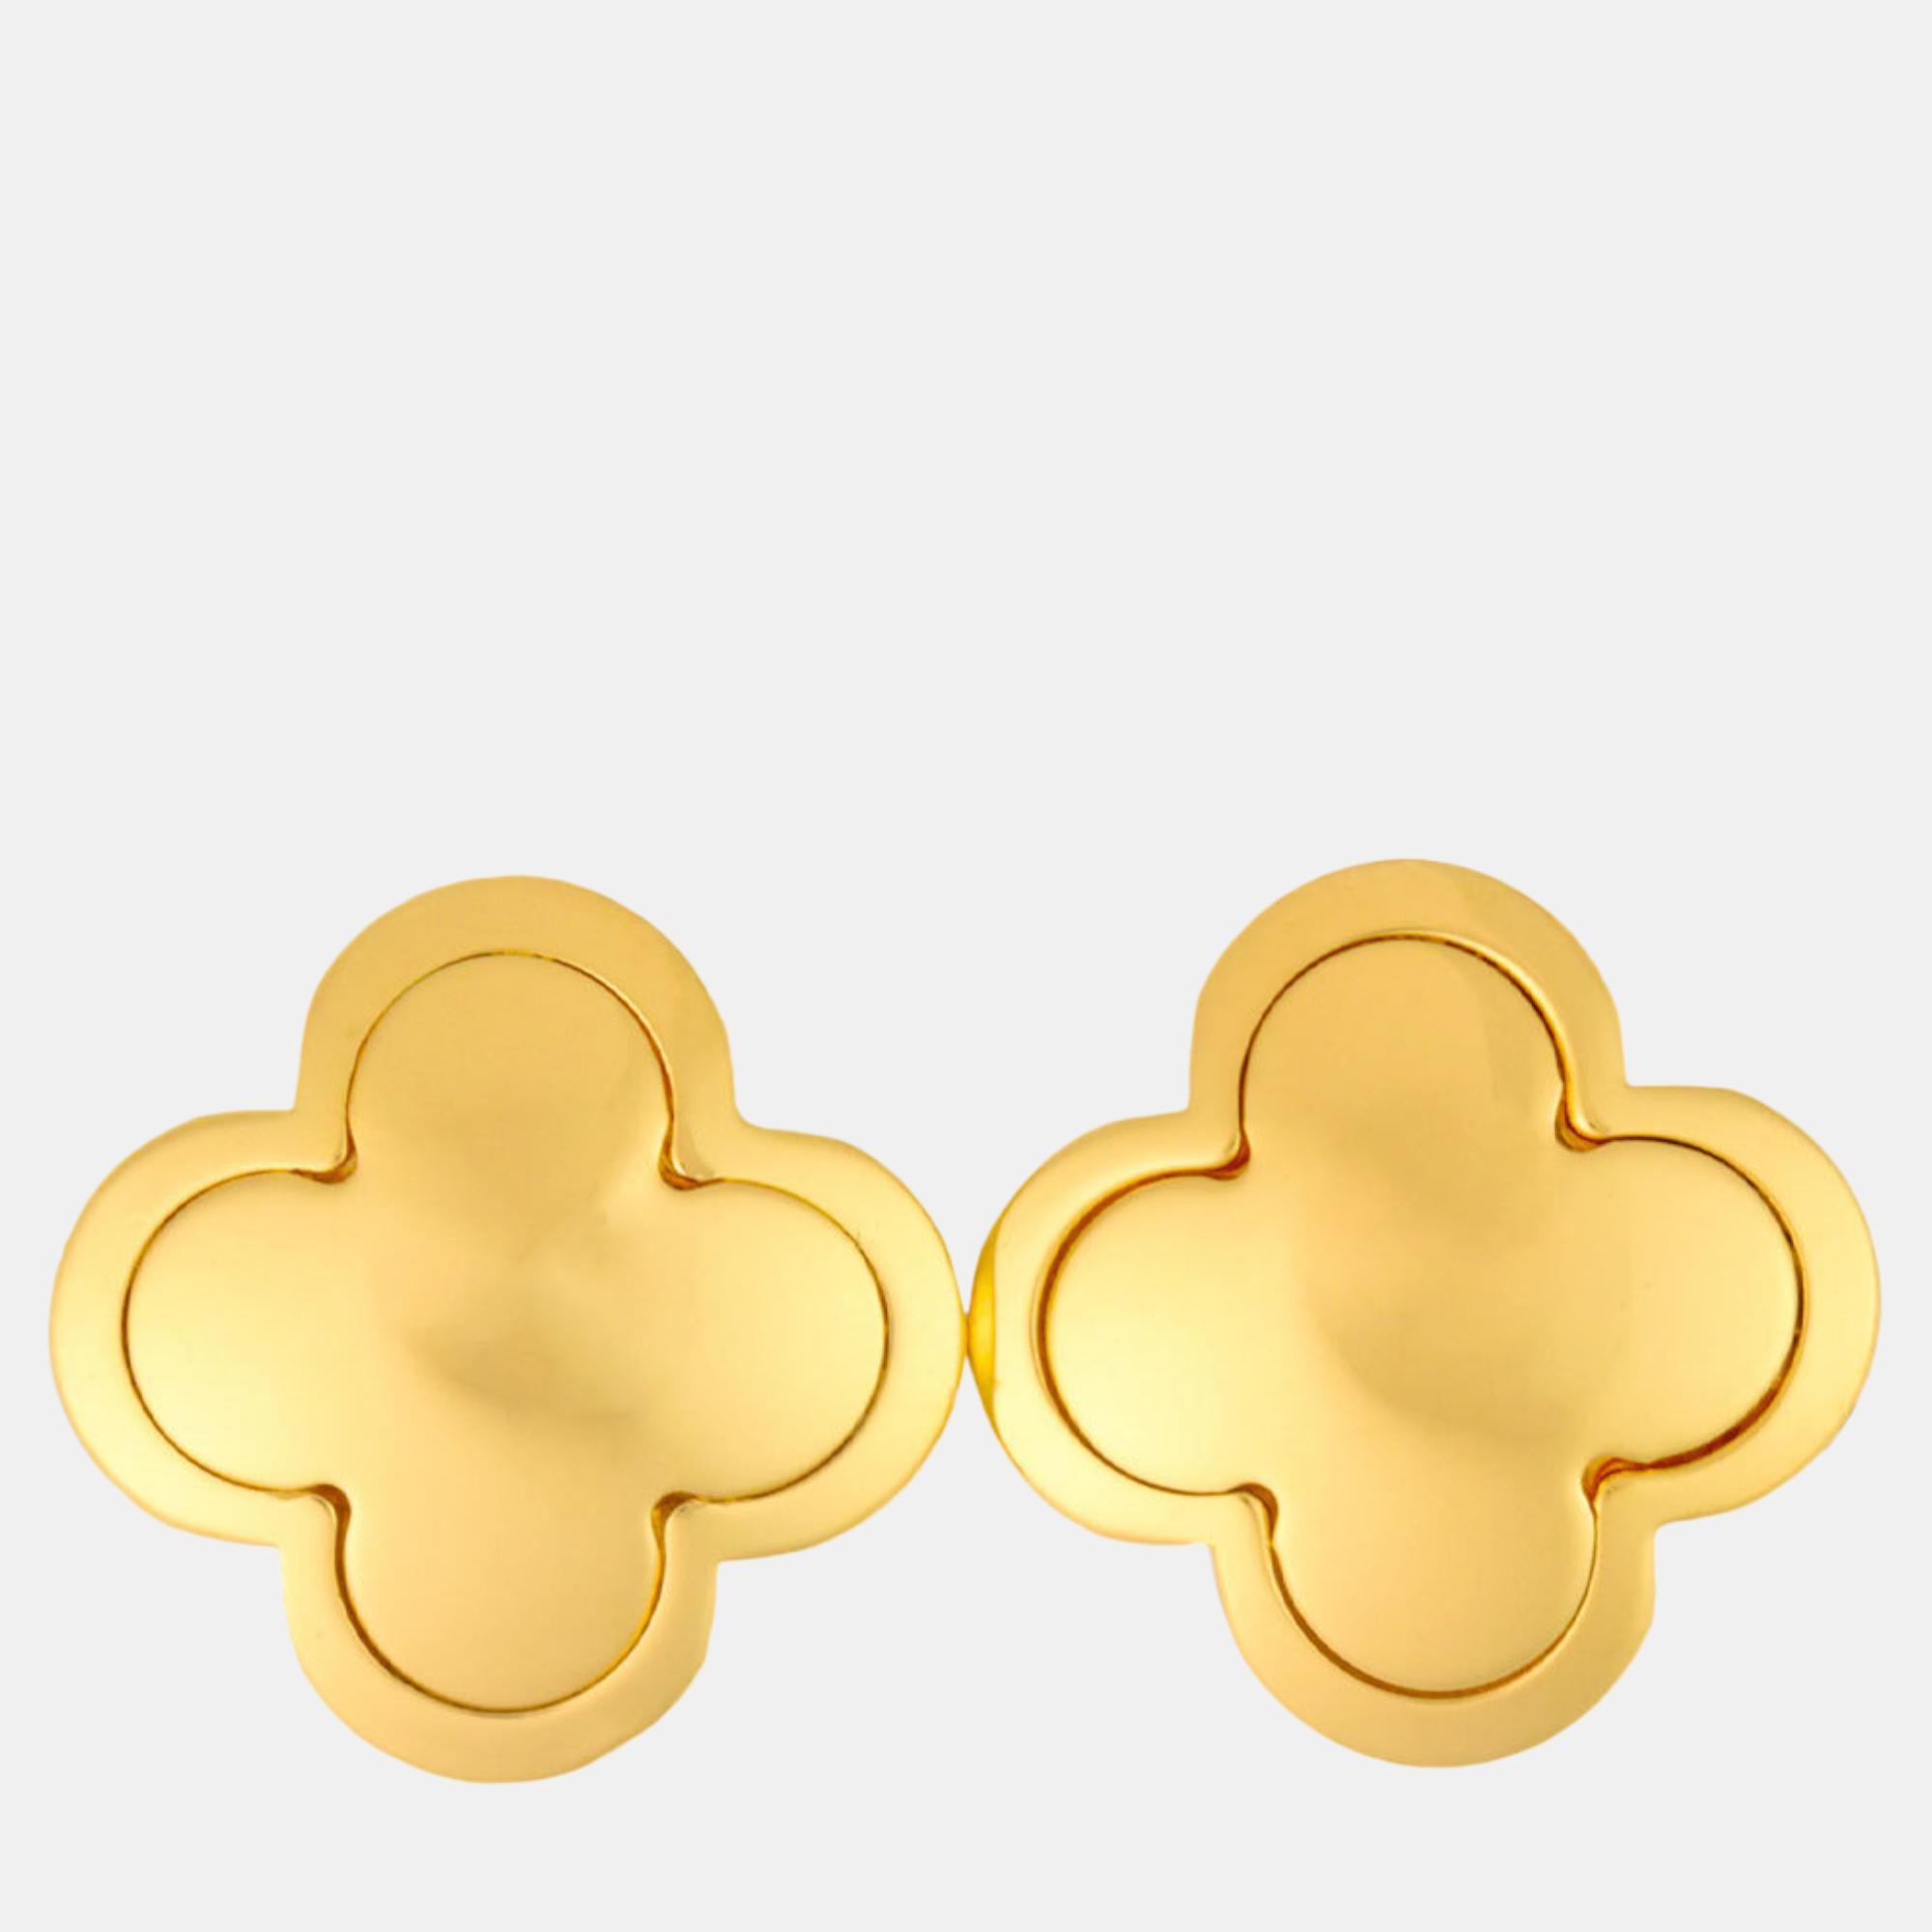 Van cleef & arpels pure alhambra 18k yellow gold earrings